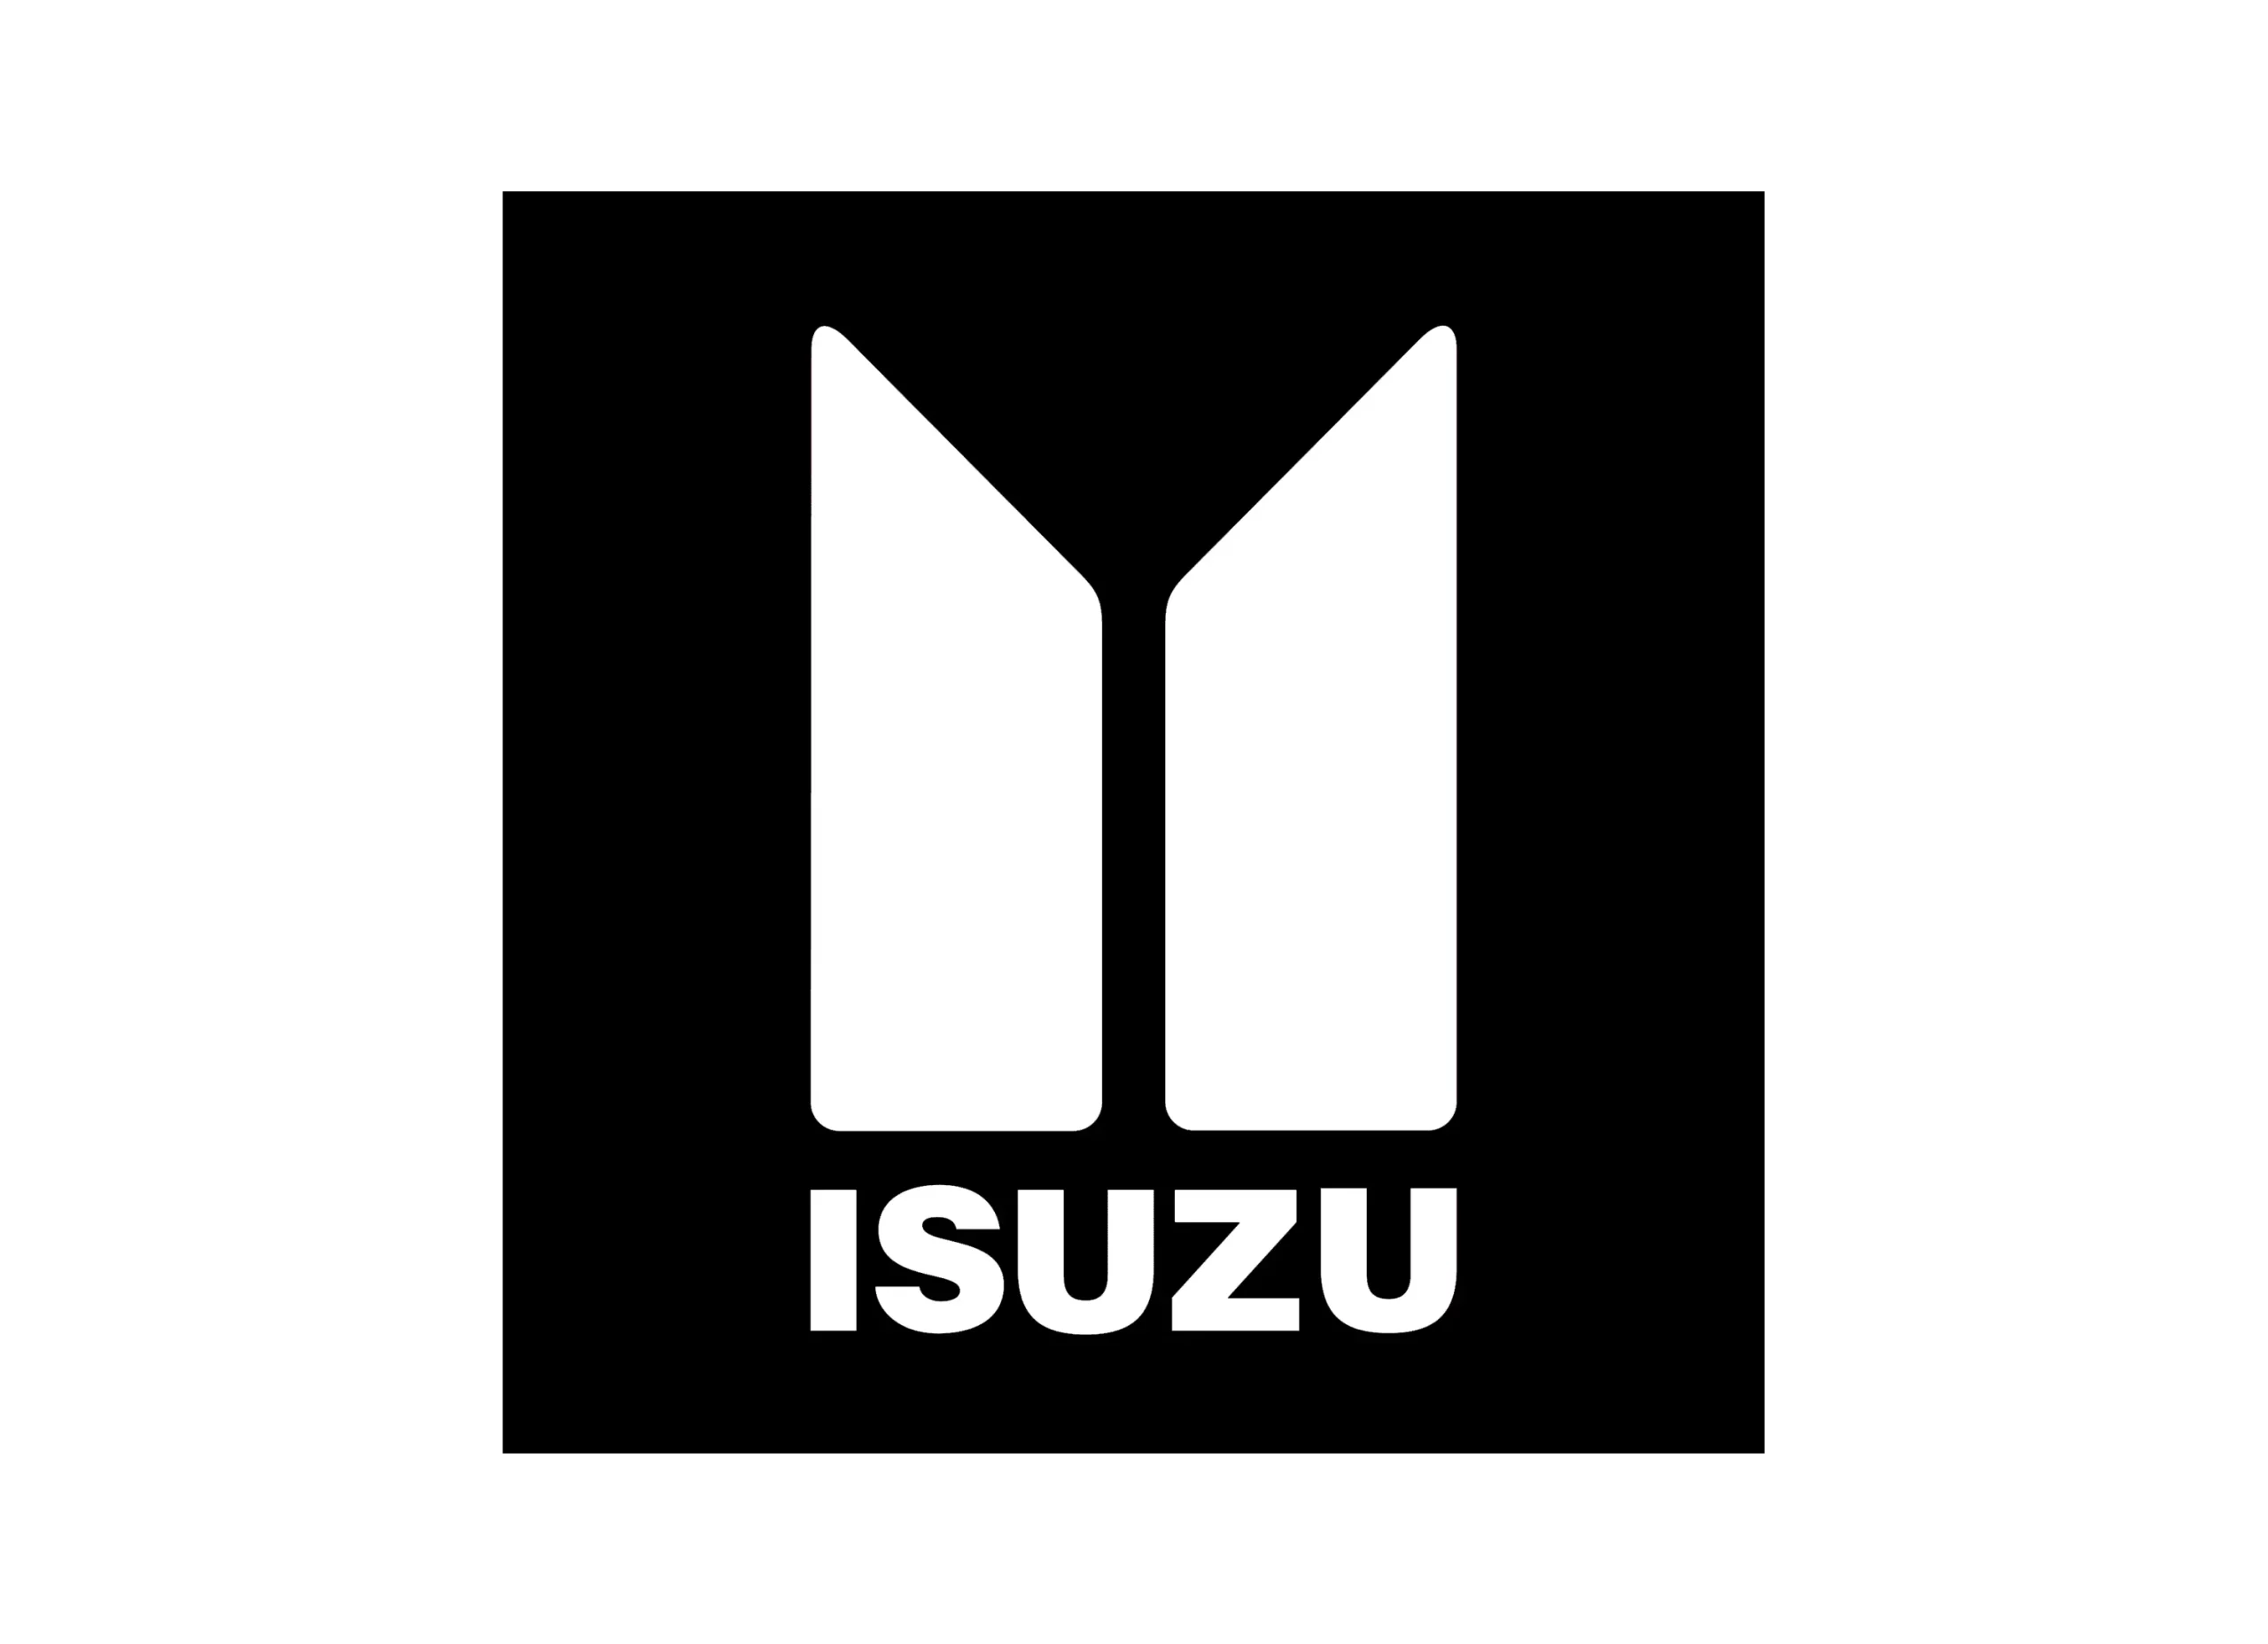 Isuzu emblem